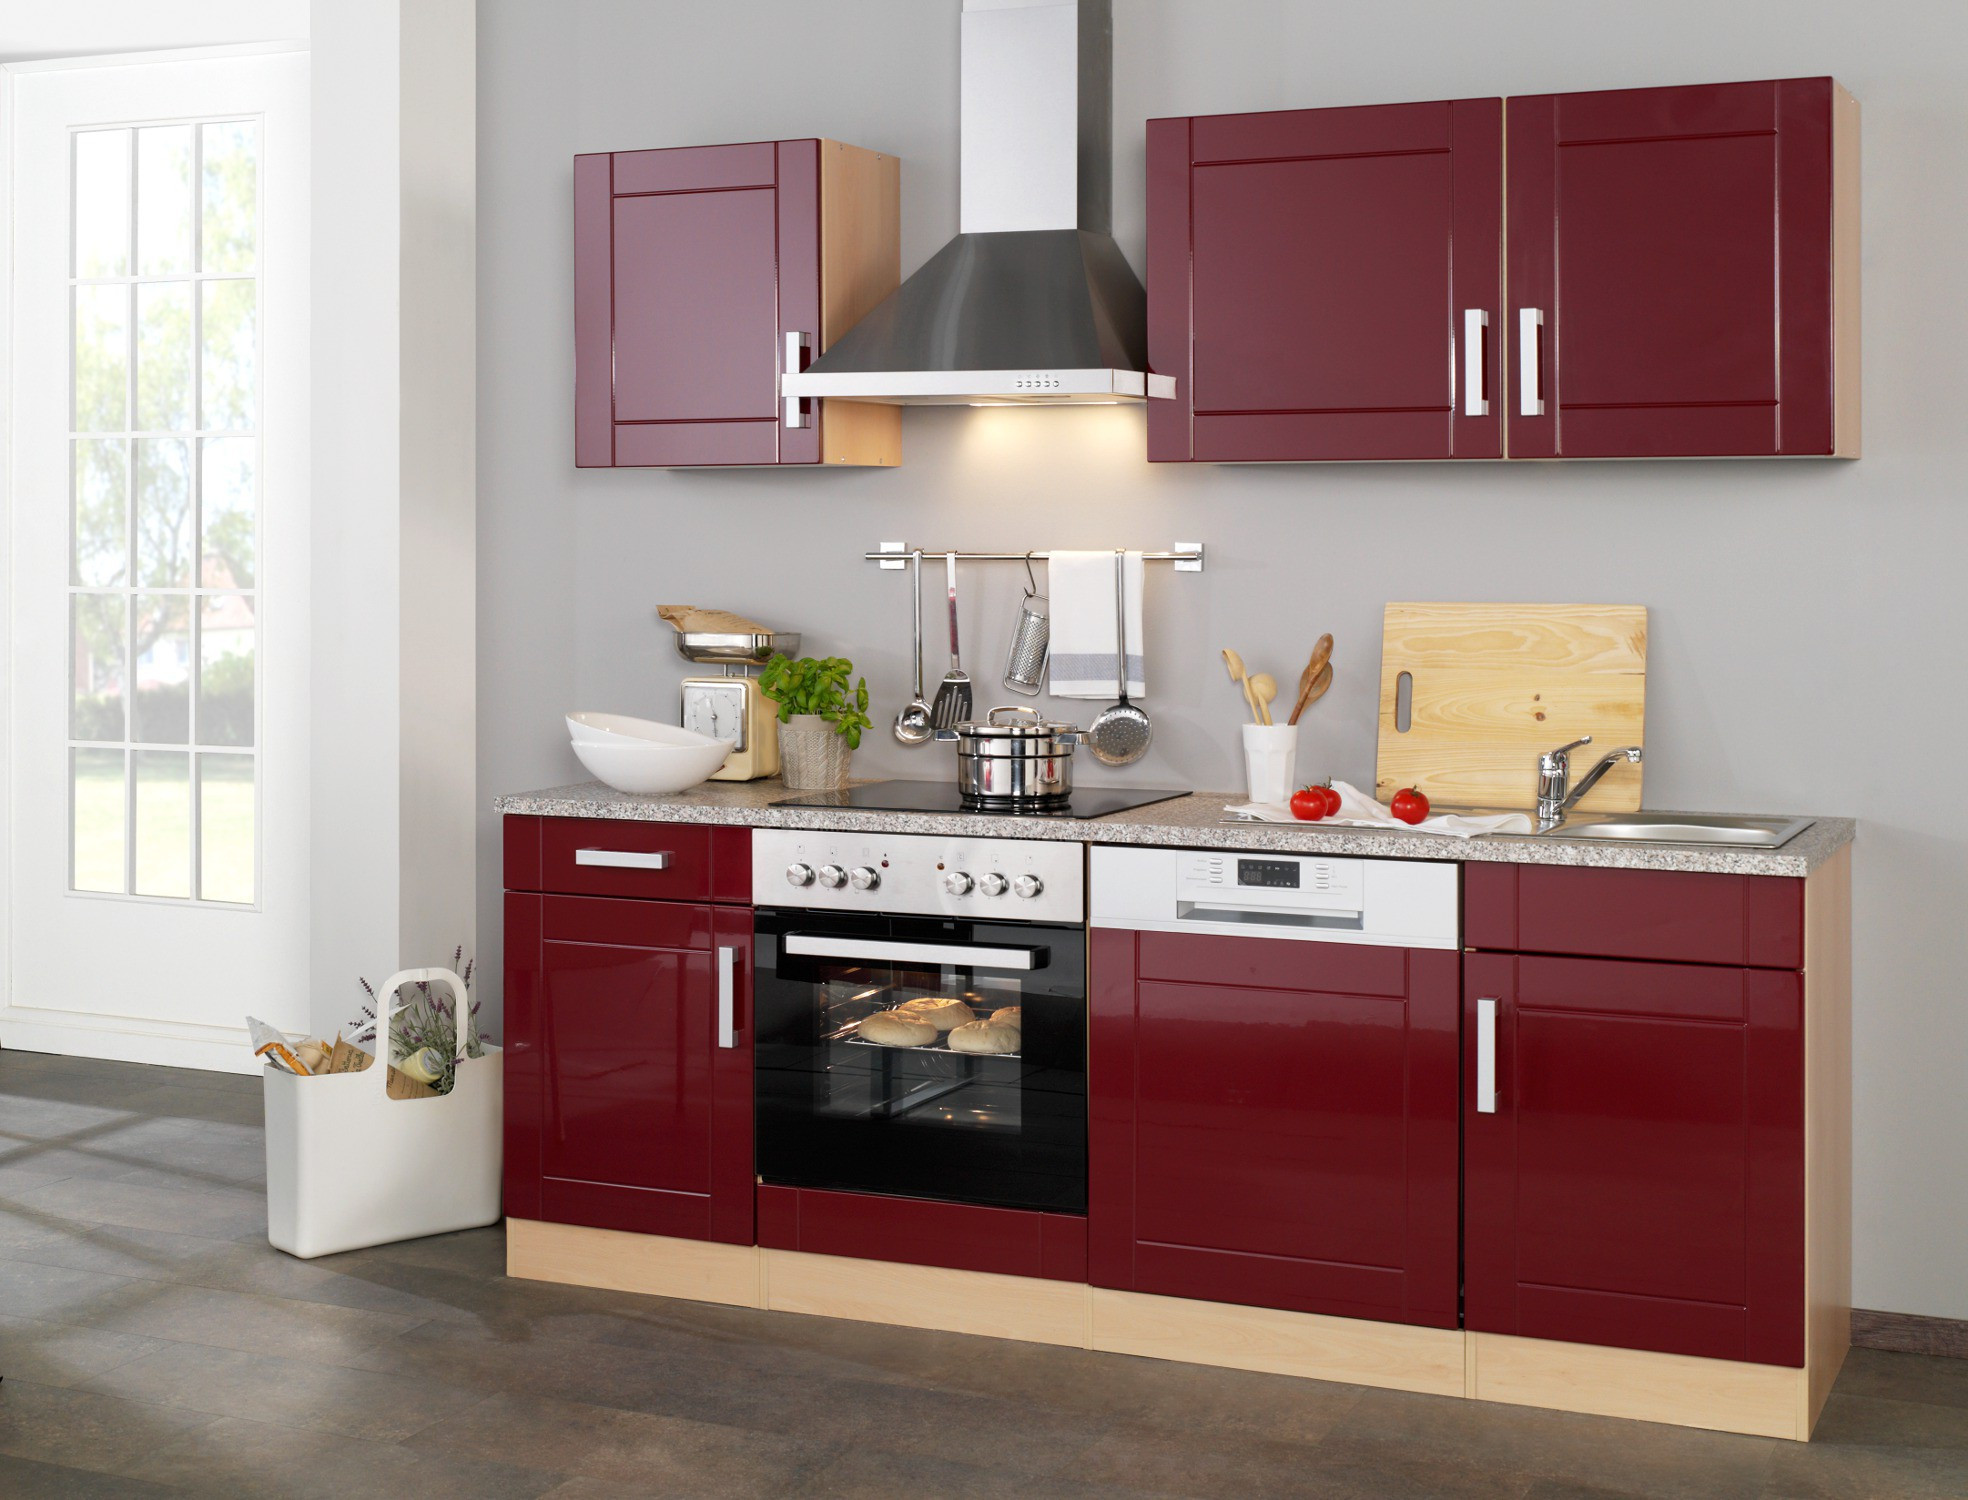 Küche Mit E Geräten
 Küchenzeile VAREL Küche mit E Geräten Breite 220 cm